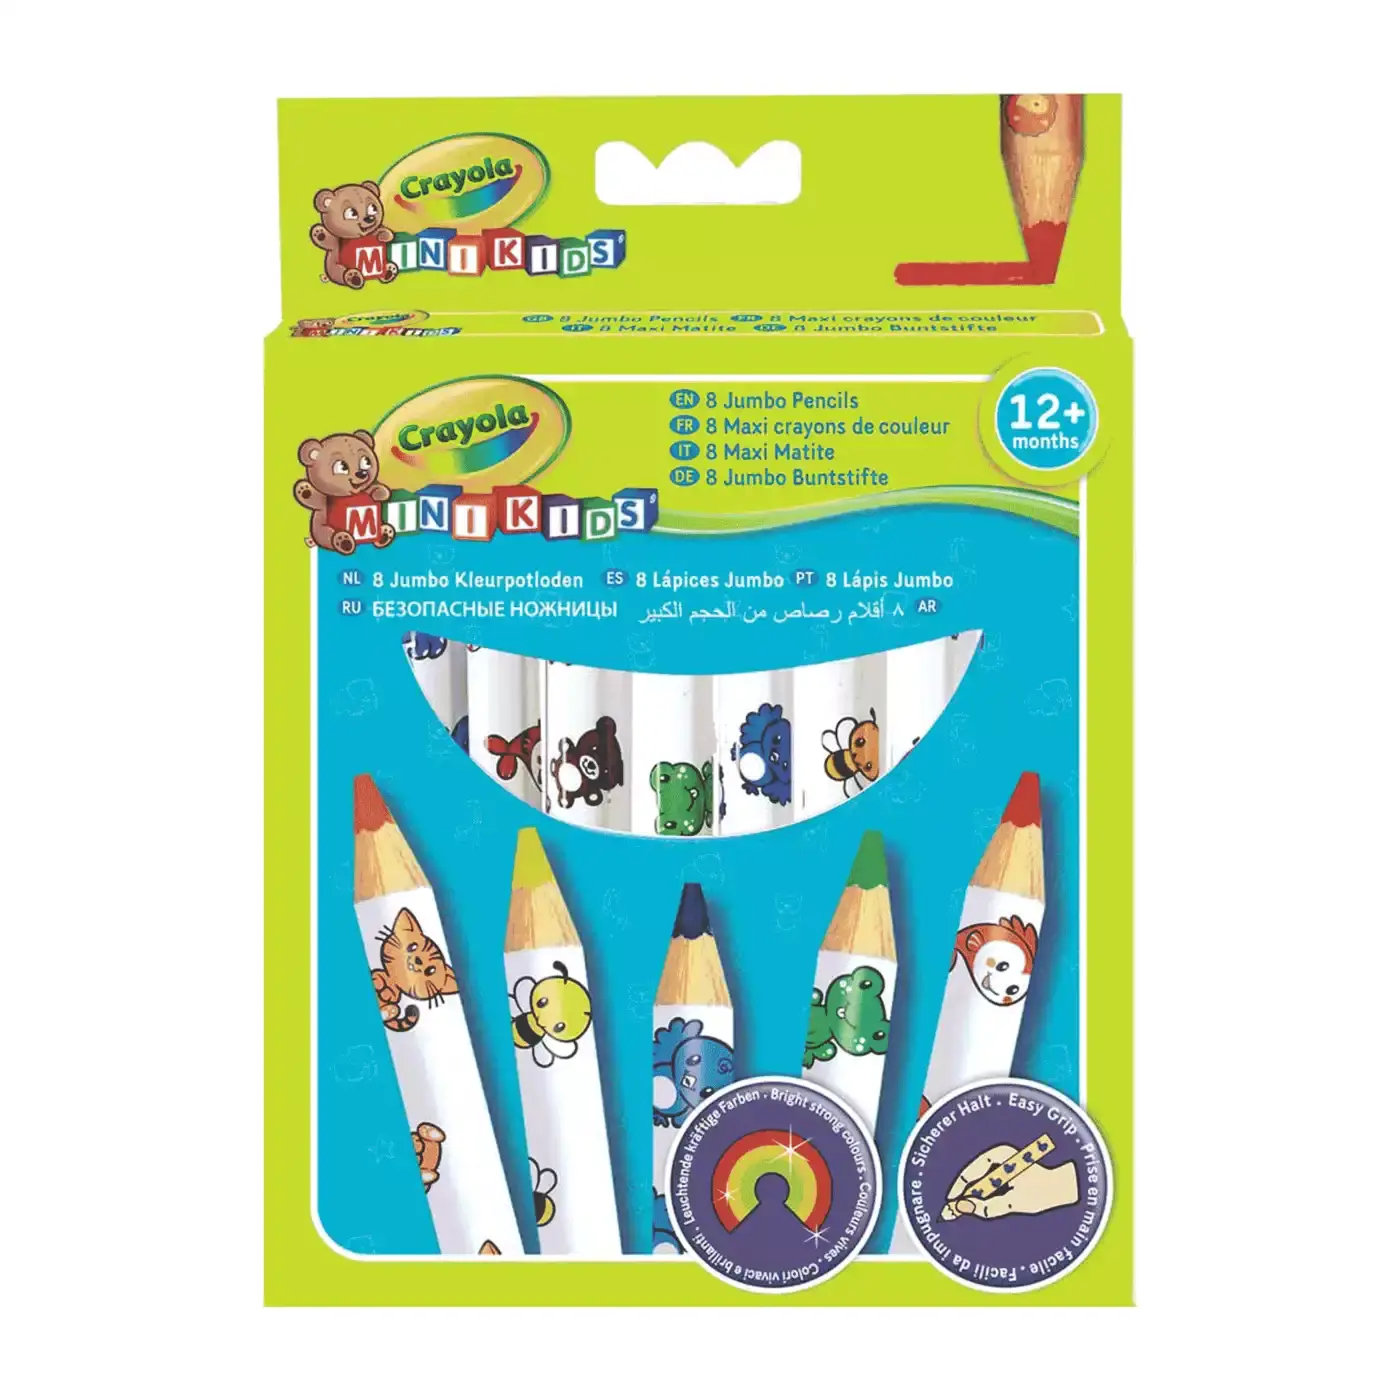 Mini Kids Buntstifte Crayola Weiß 2000525238504 1